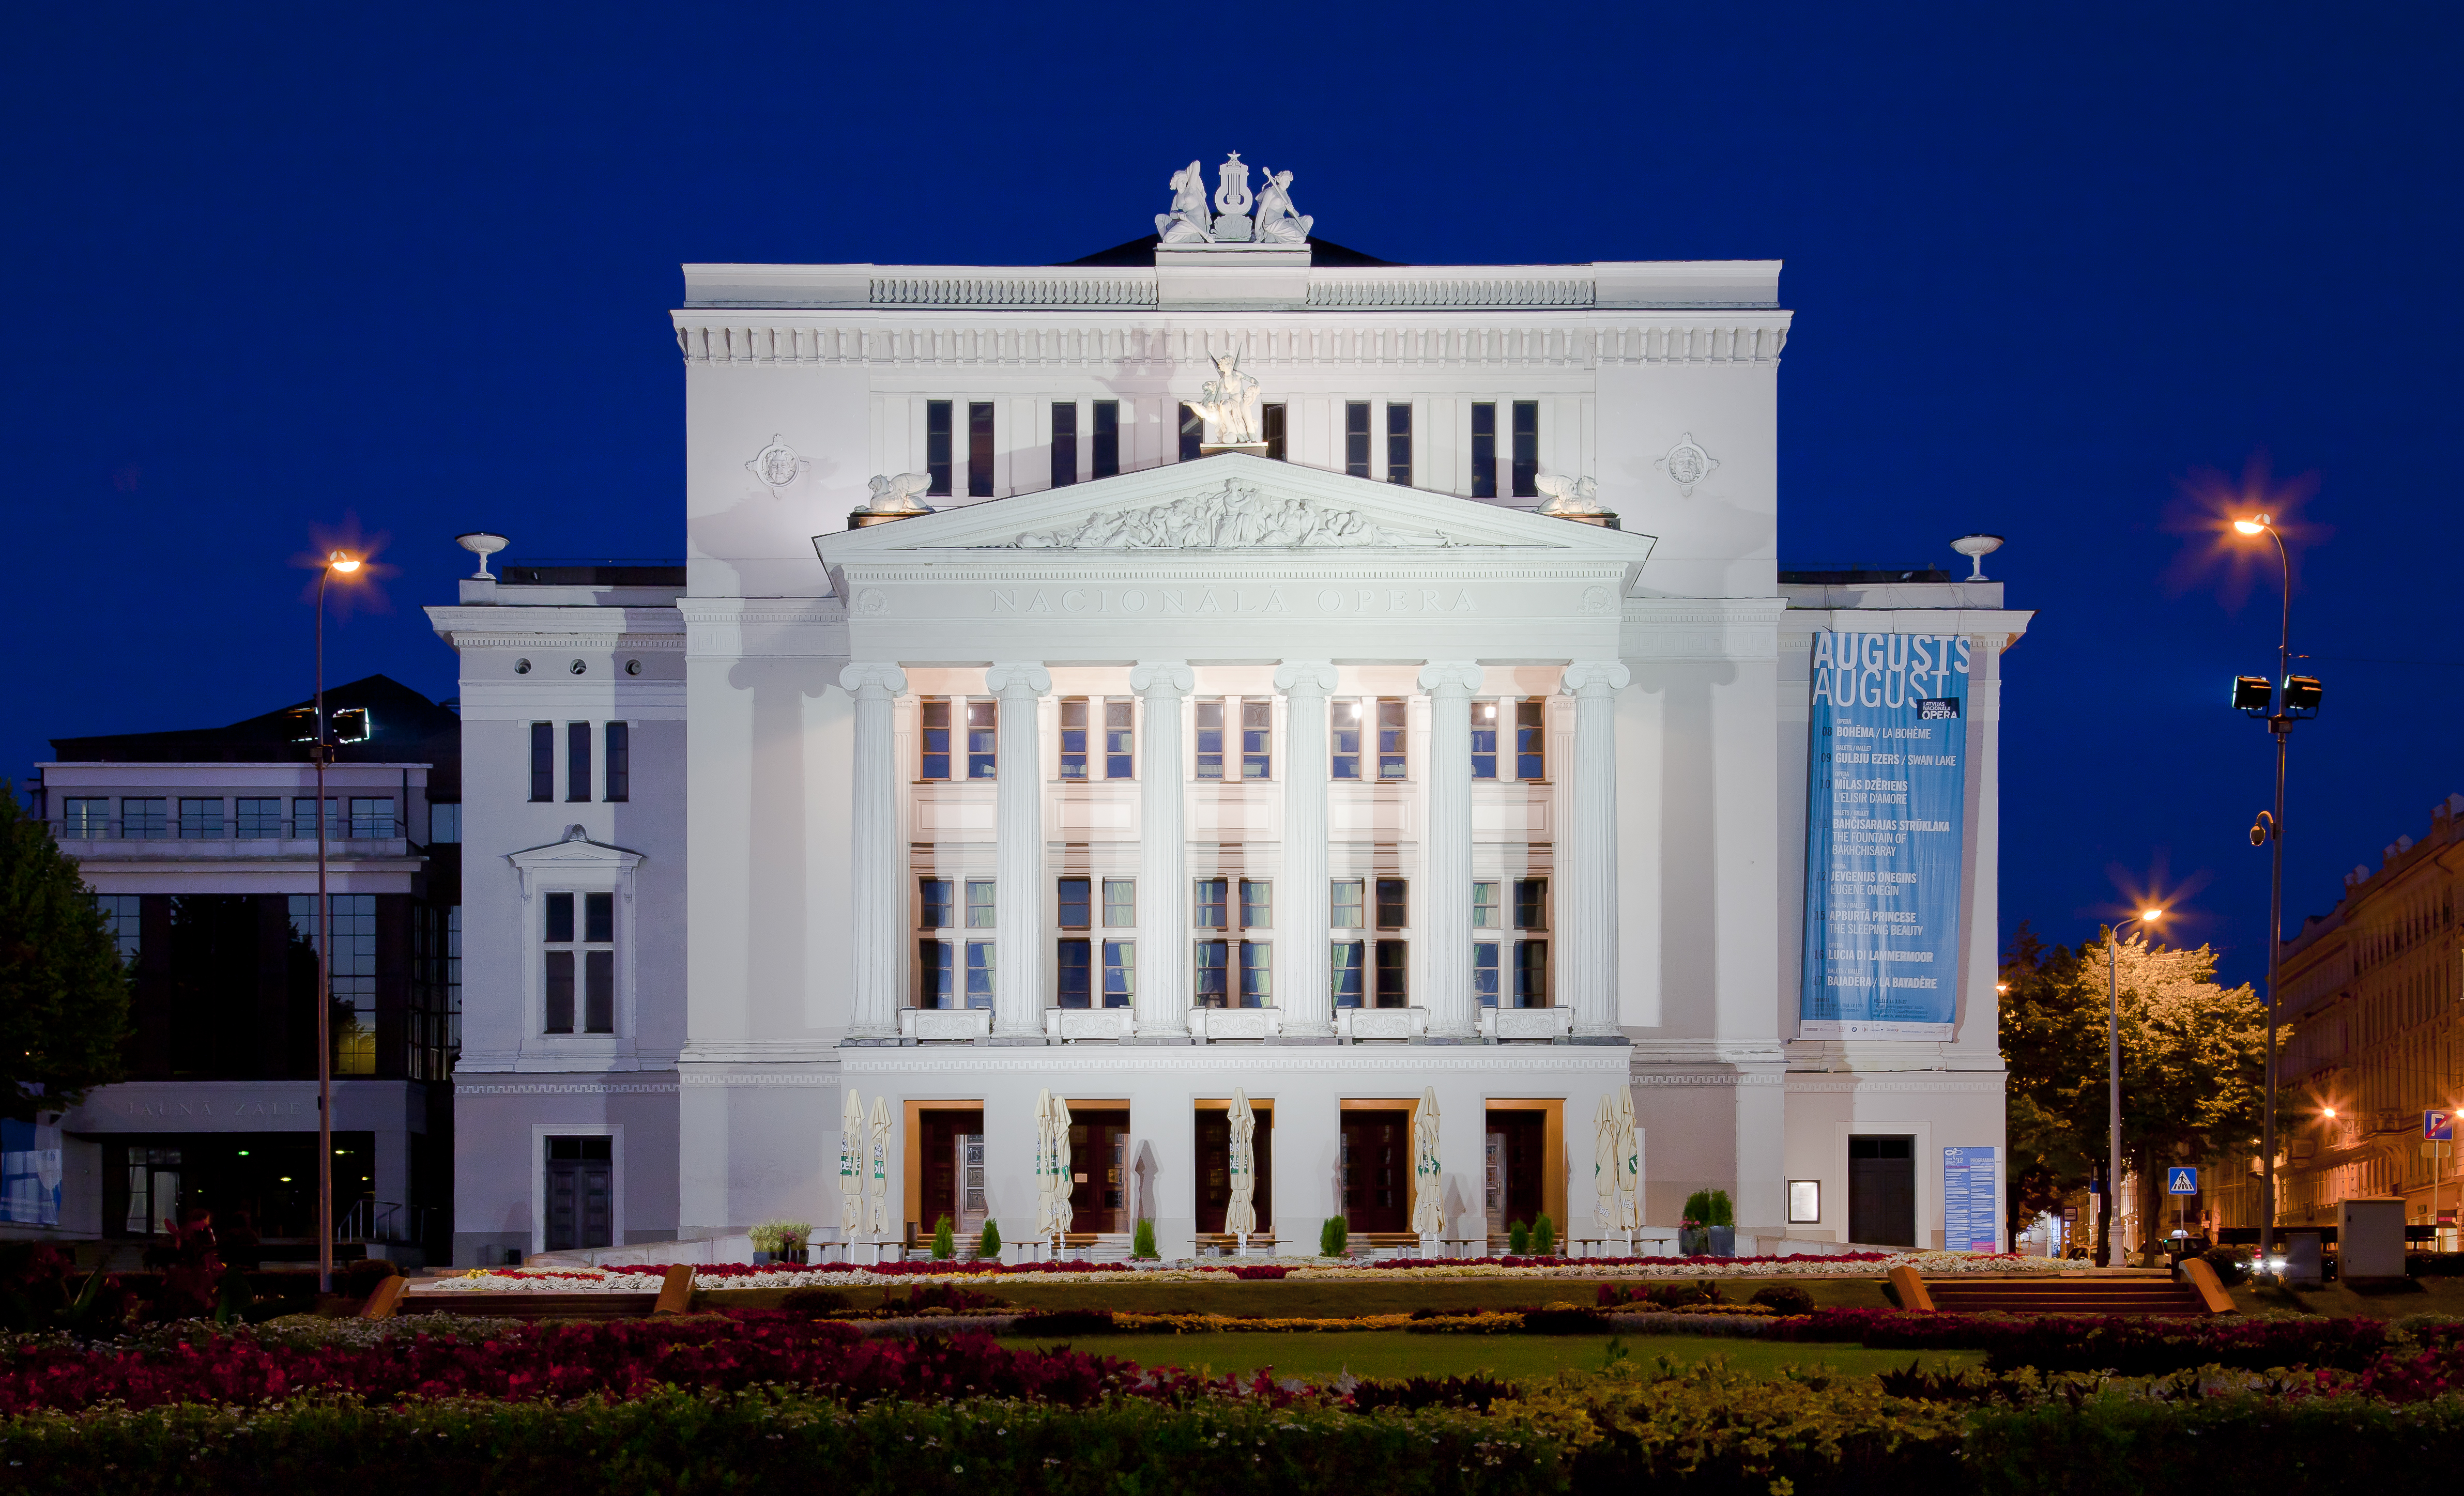 Opera Nacional, Riga, Letonia, 2012-08-07, DD 11